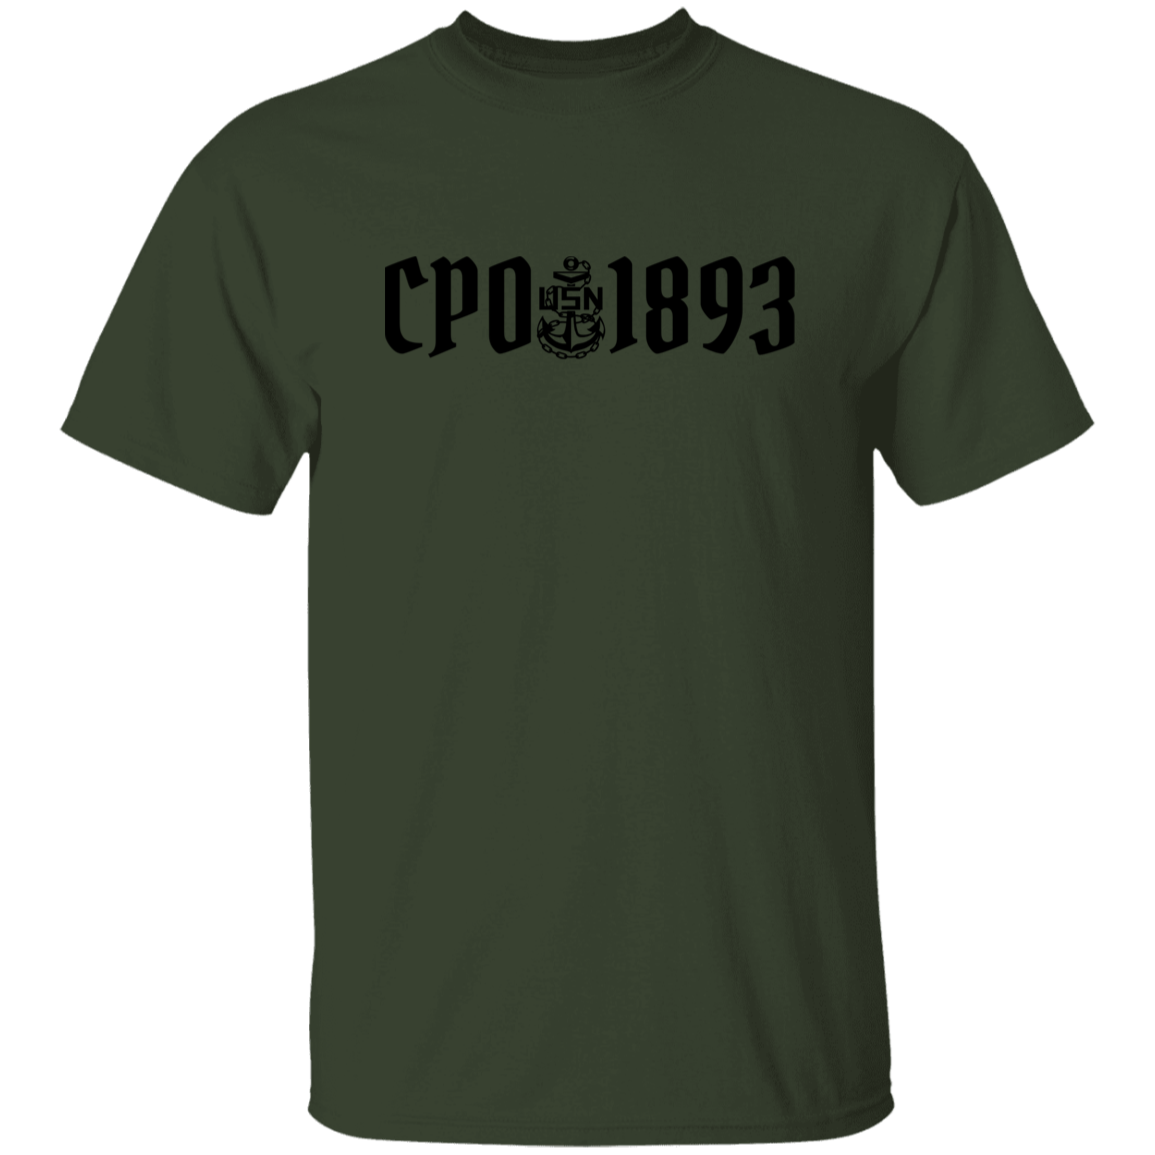 CPO 1893 5.3 oz. T-Shirt